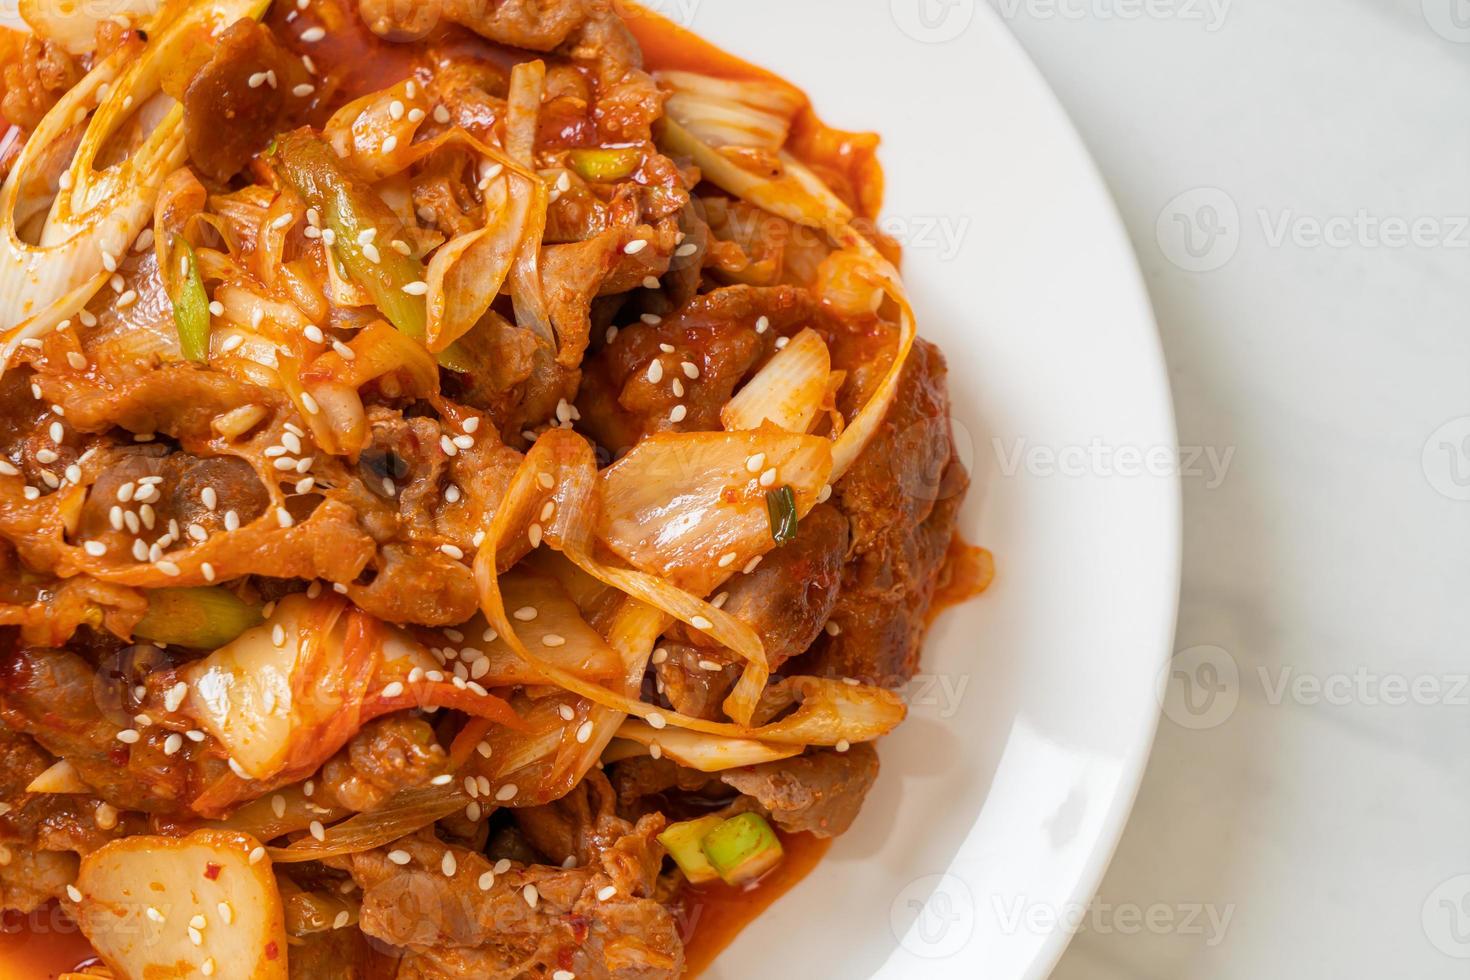 cerdo salteado con pasta picante coreana y kimchi - estilo de comida coreana foto